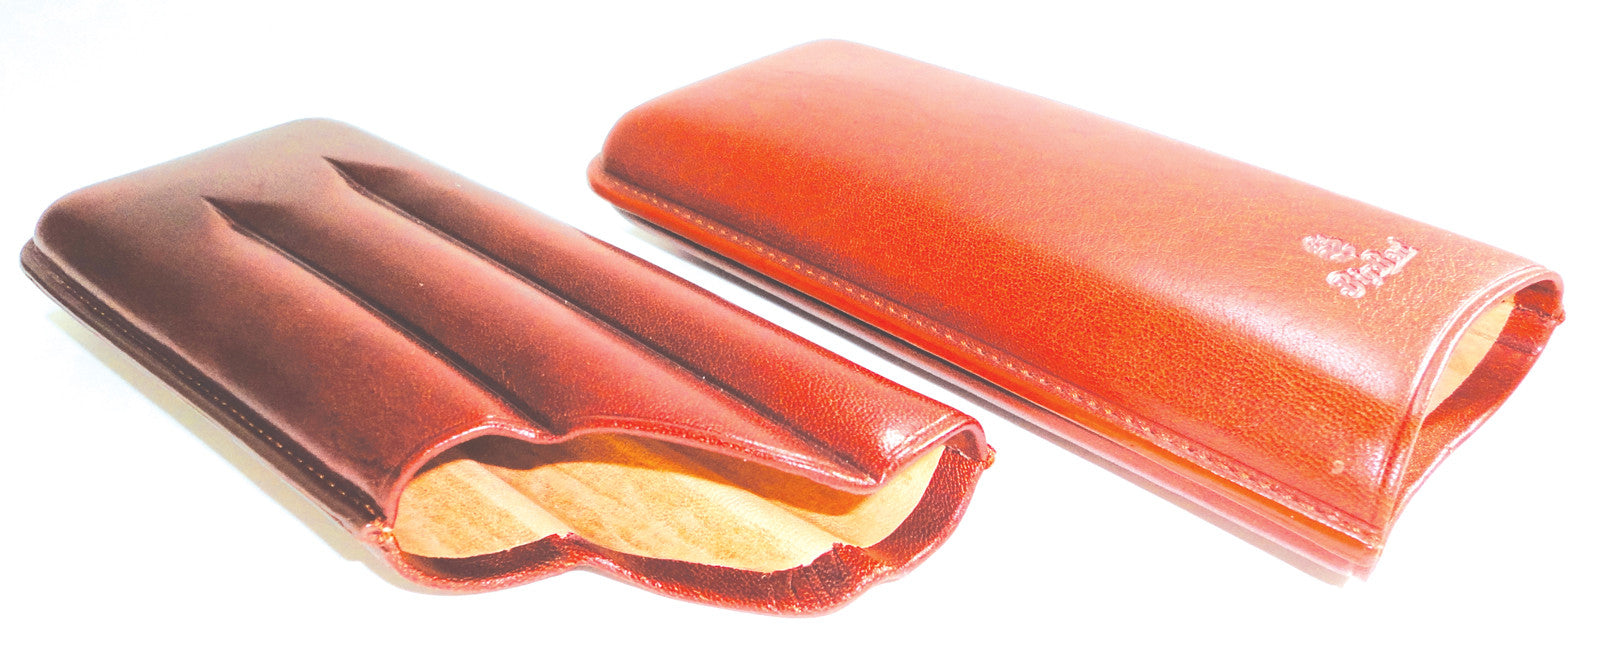 BigBen genuine leather cigar case 3 corona 150 mm tan-tob 656.450.355